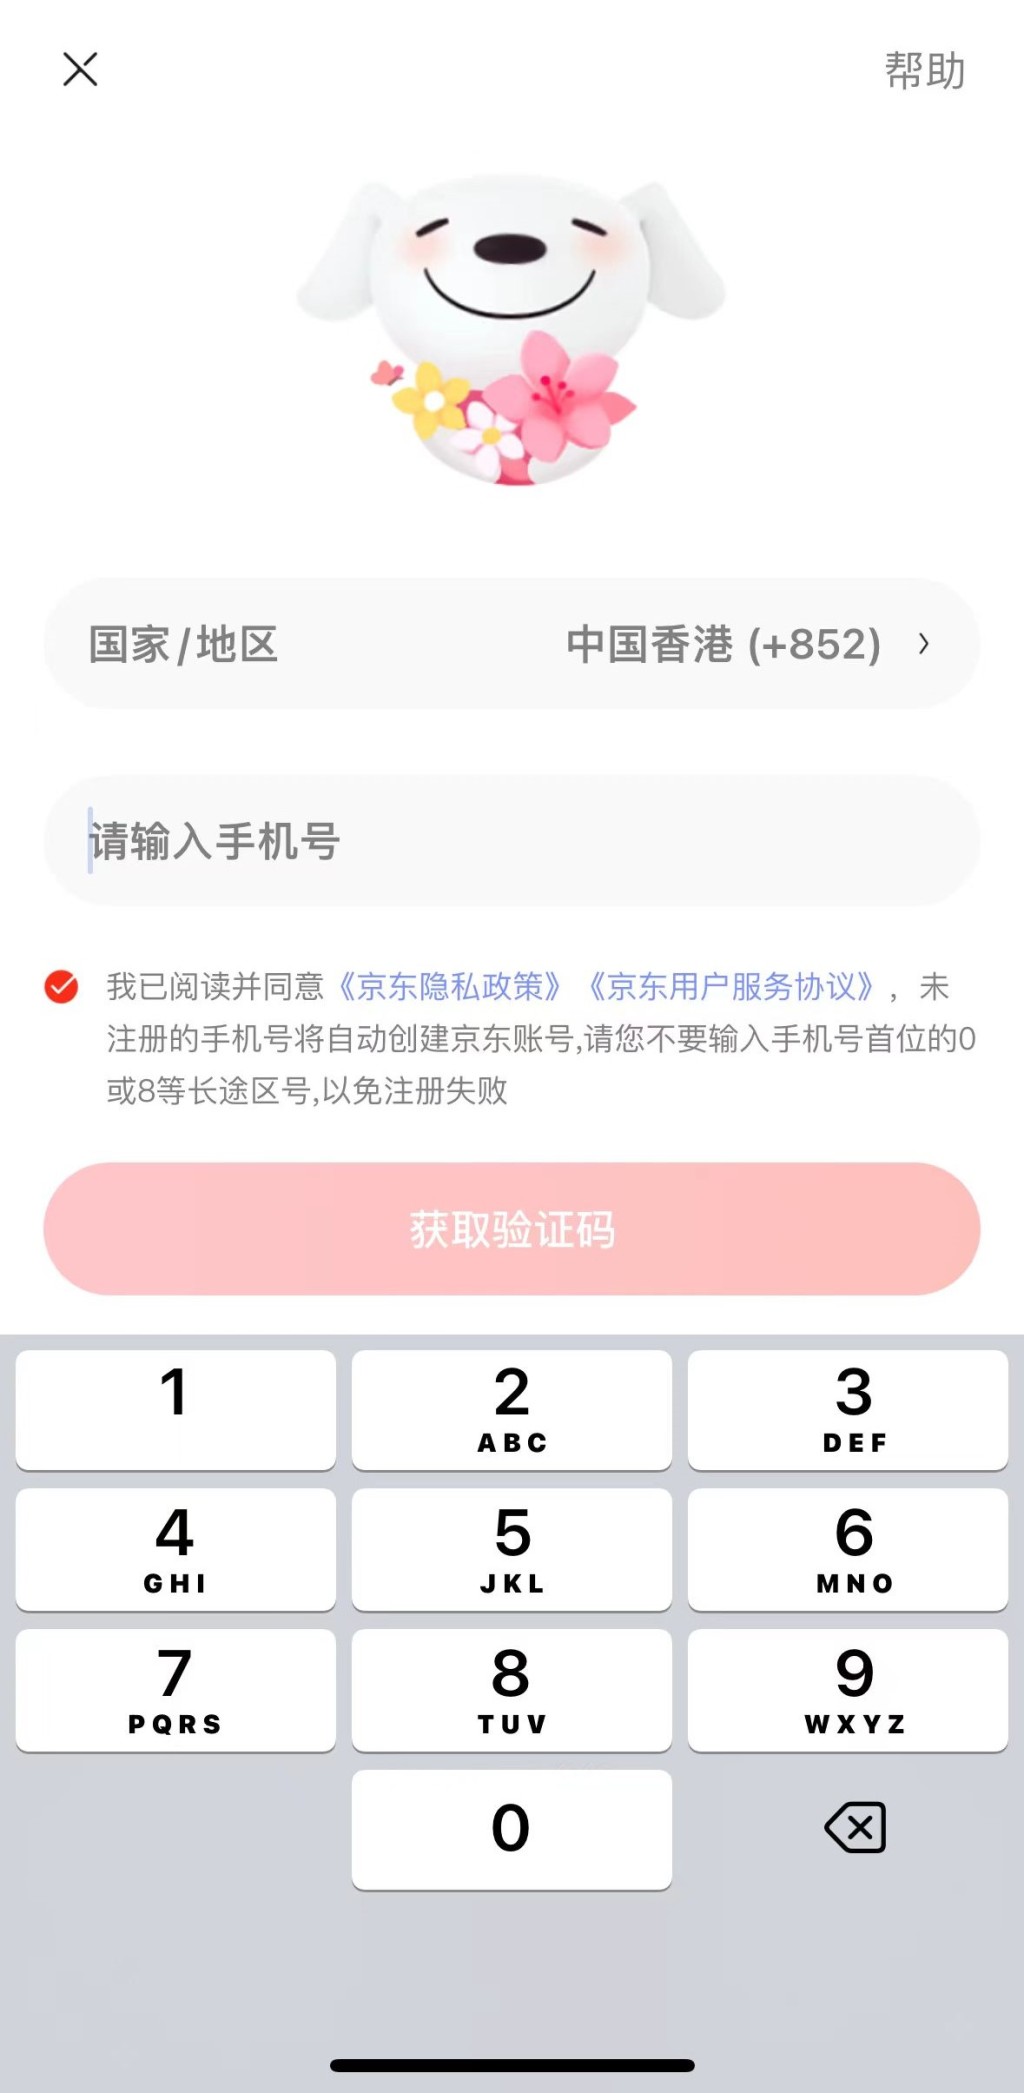  4. 用香港手機號碼註冊